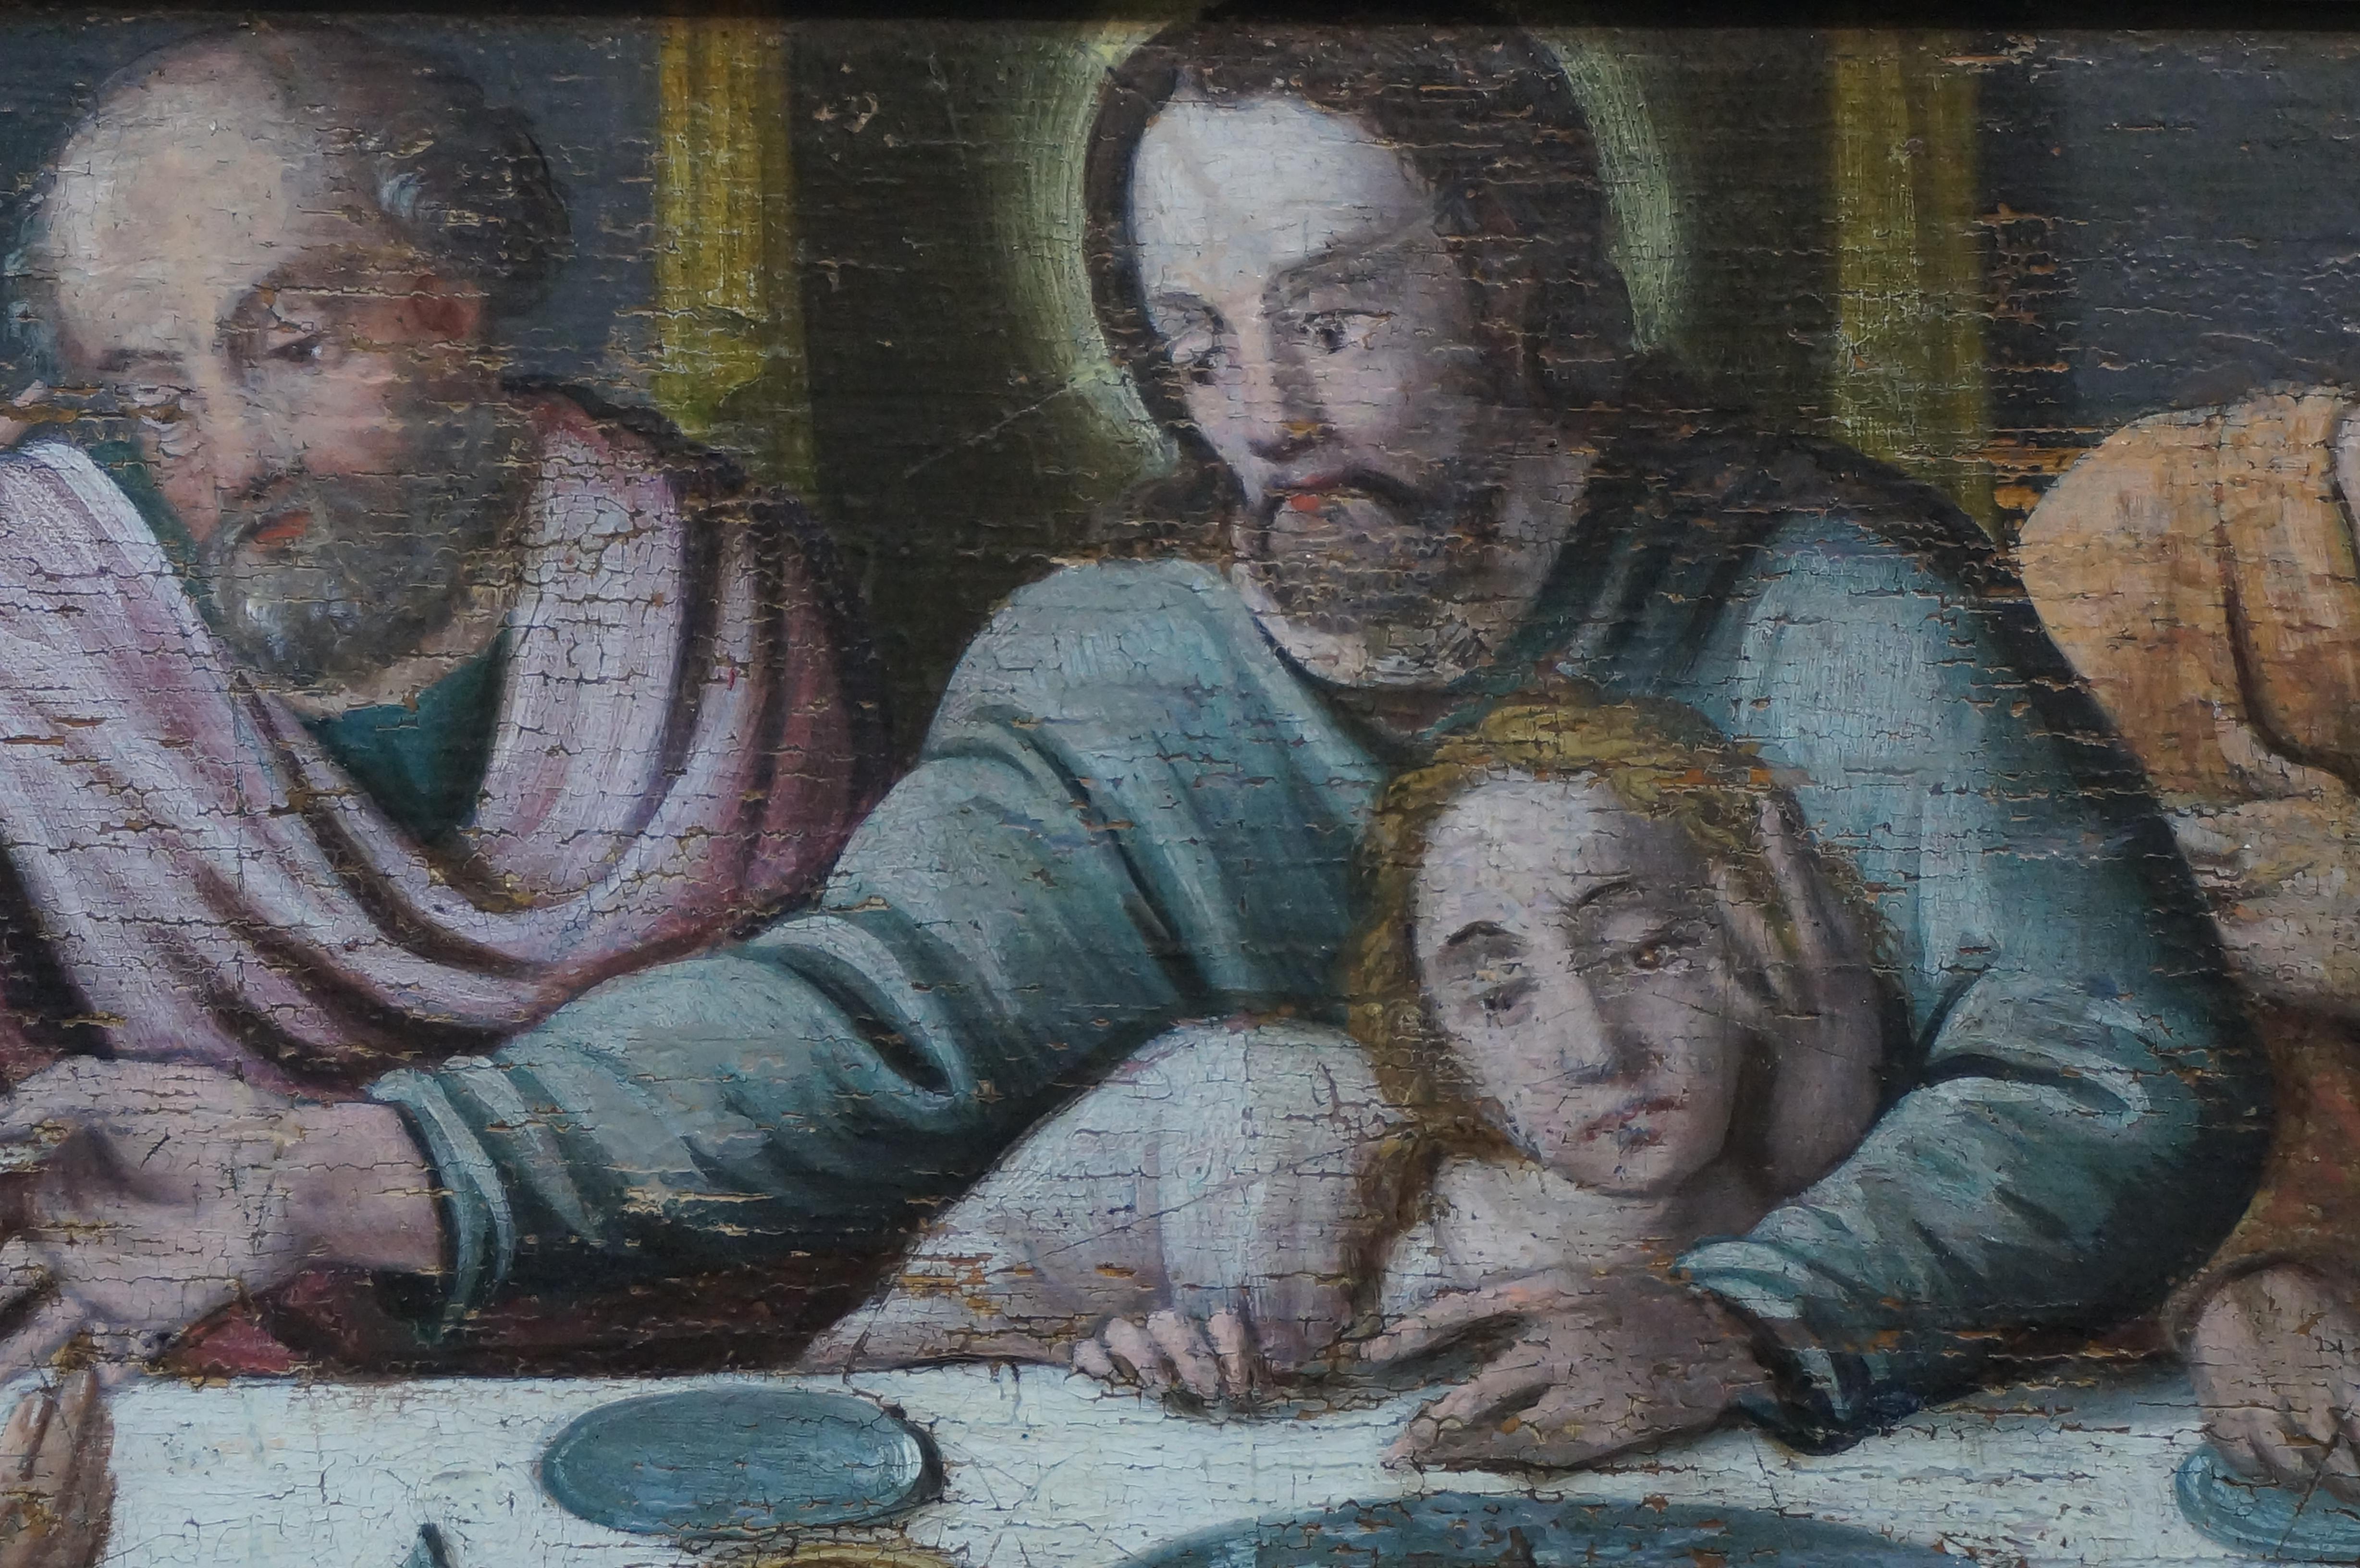 Anrique oil painting, Last Supper, German school, Renaissance, Late 16th c. 2